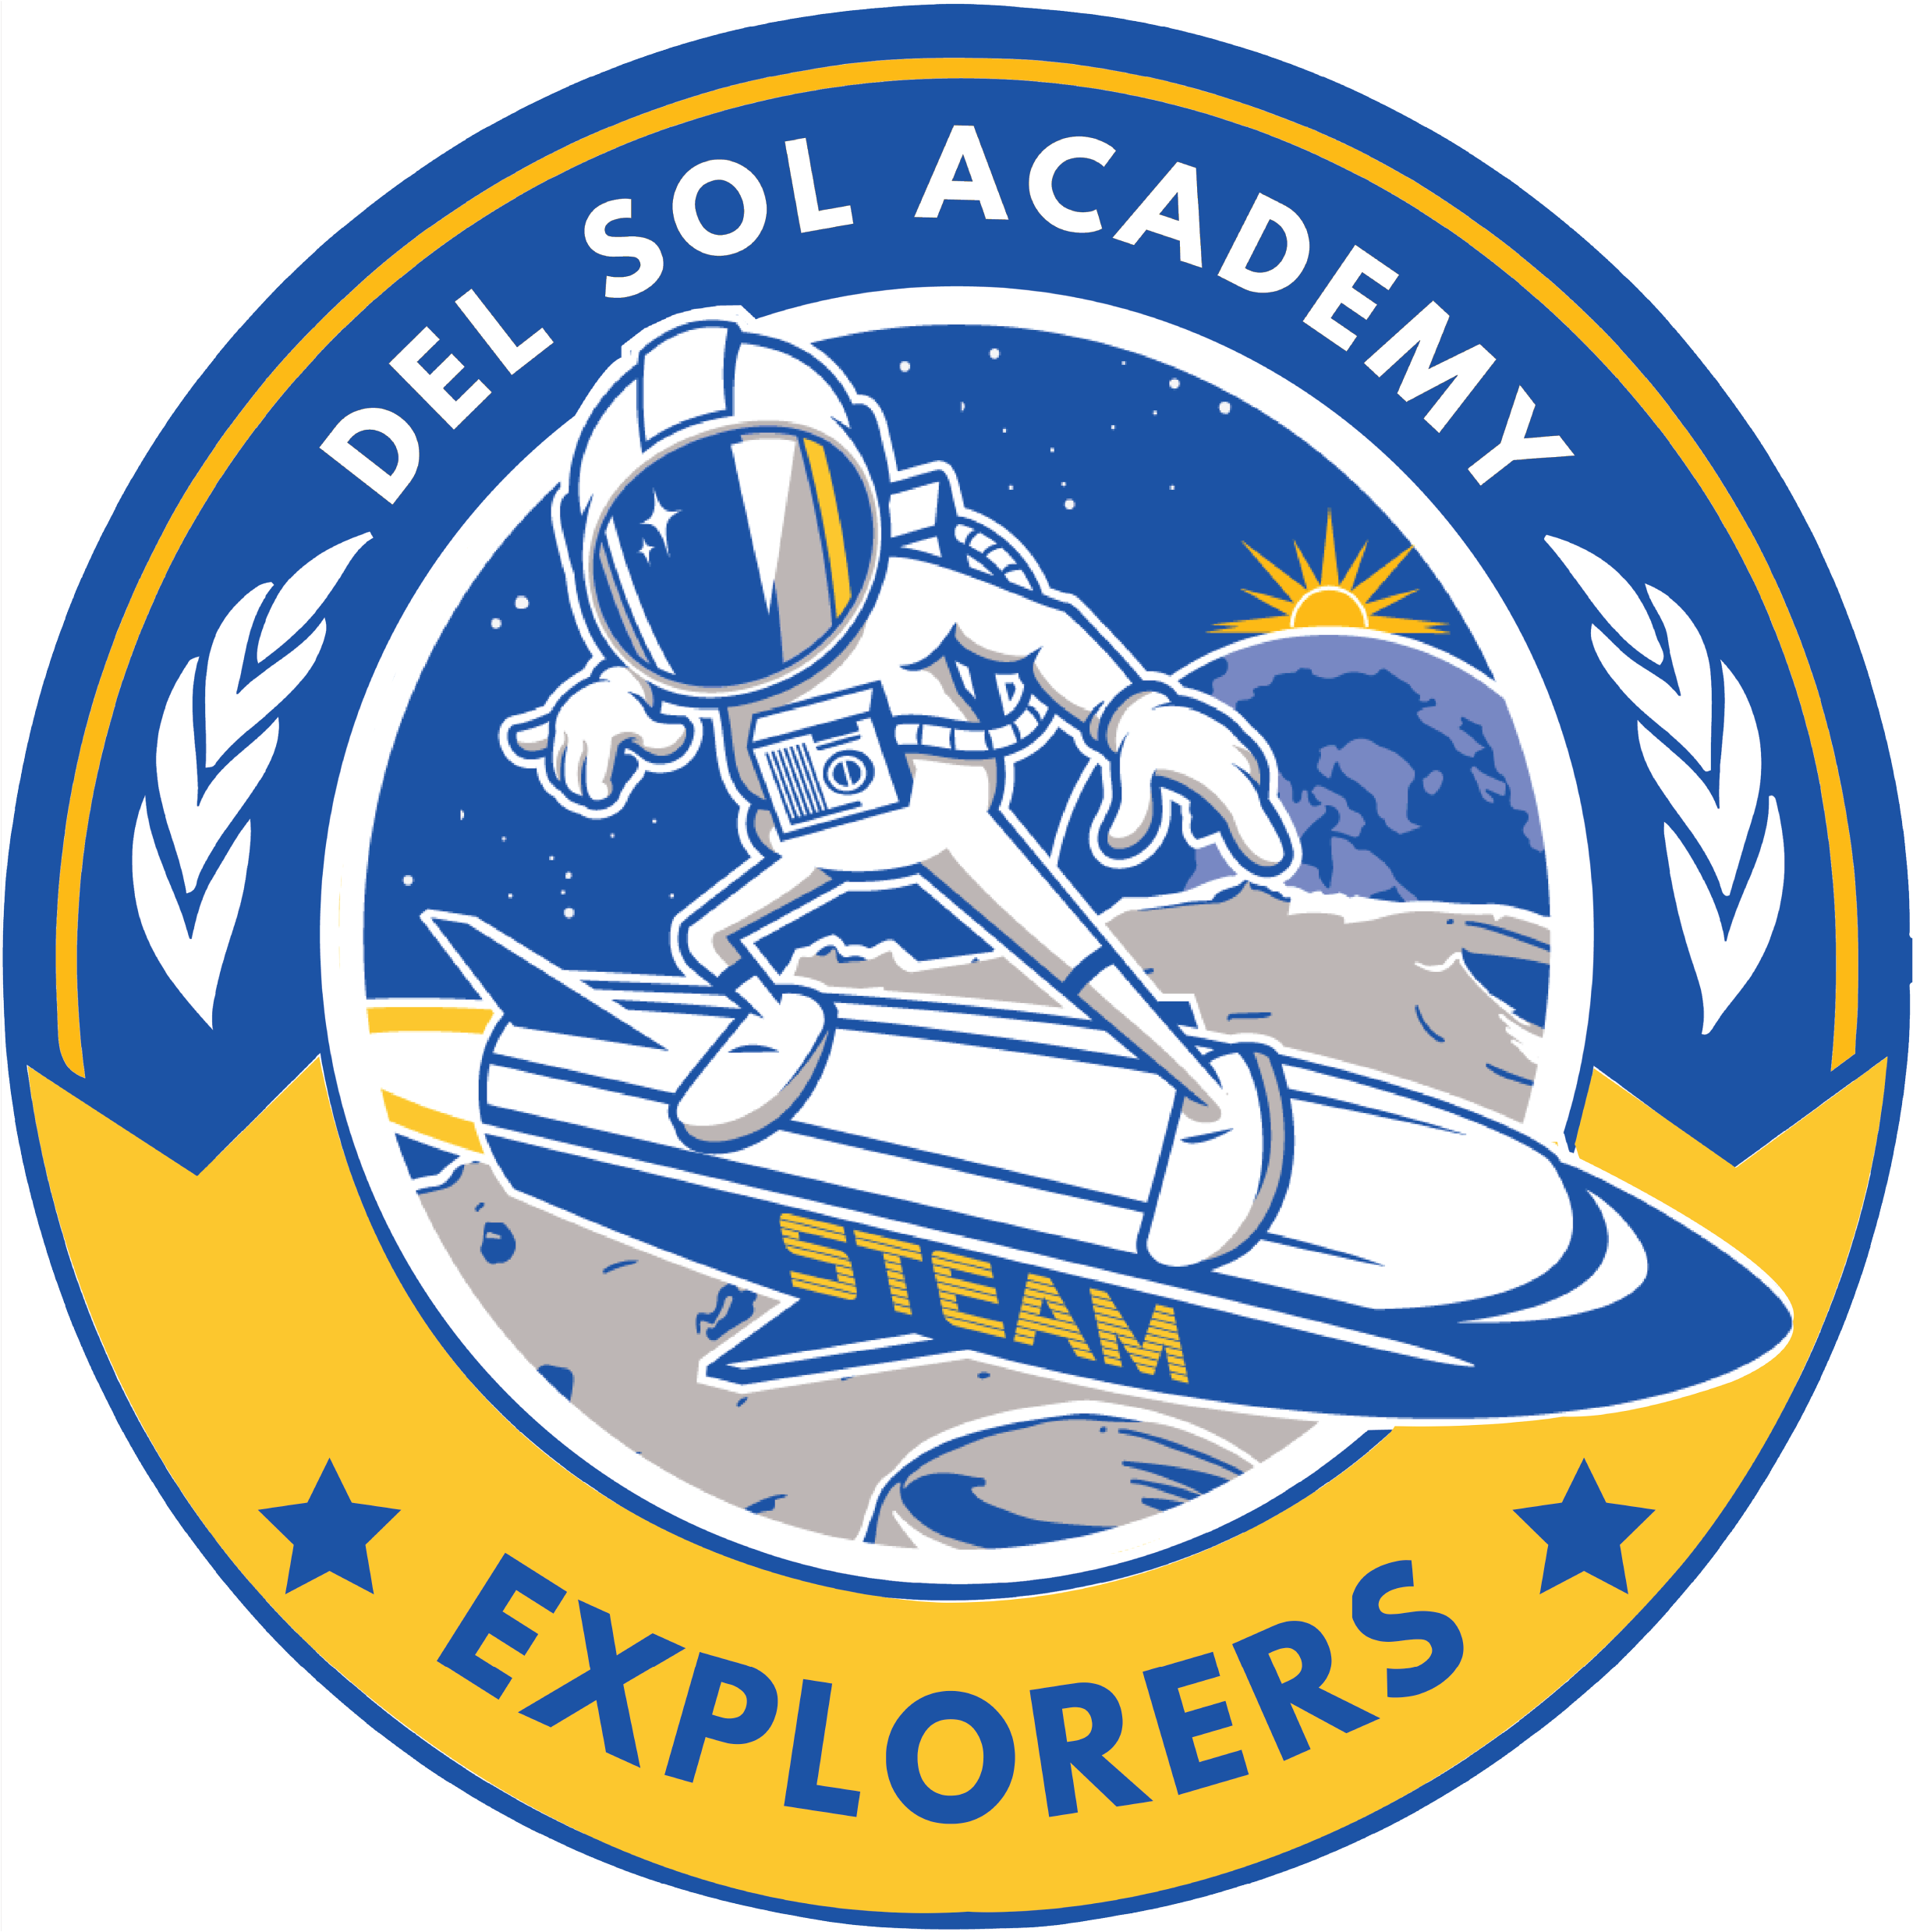 Del Sol Academy